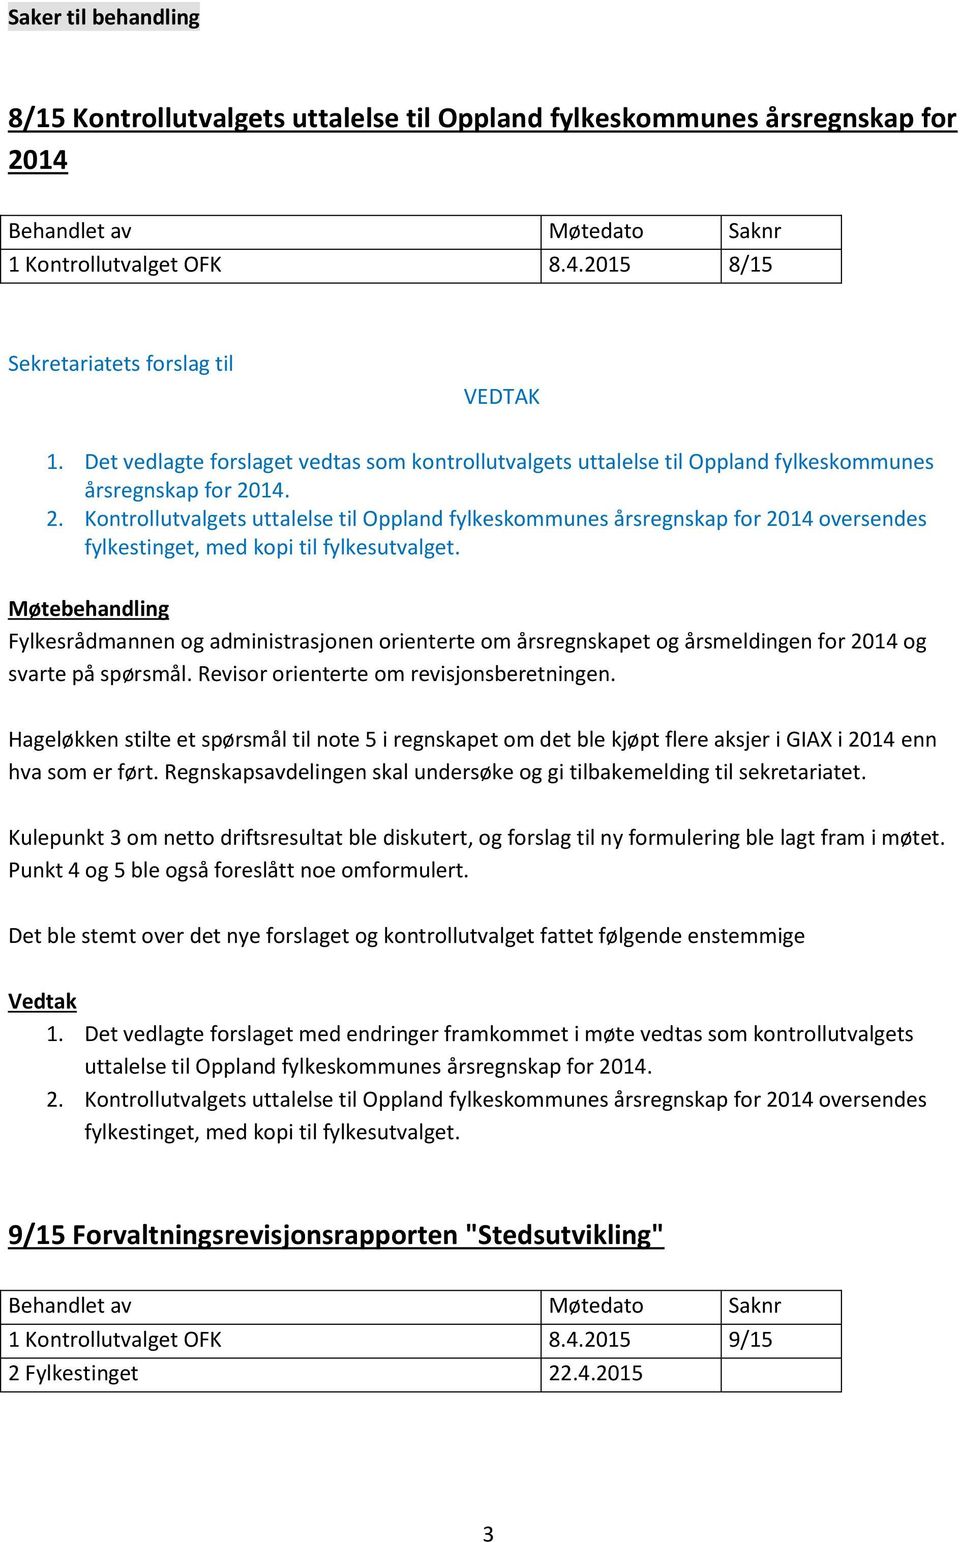 14. 2. Kontrollutvalgets uttalelse til Oppland fylkeskommunes årsregnskap for 2014 oversendes fylkestinget, med kopi til fylkesutvalget.